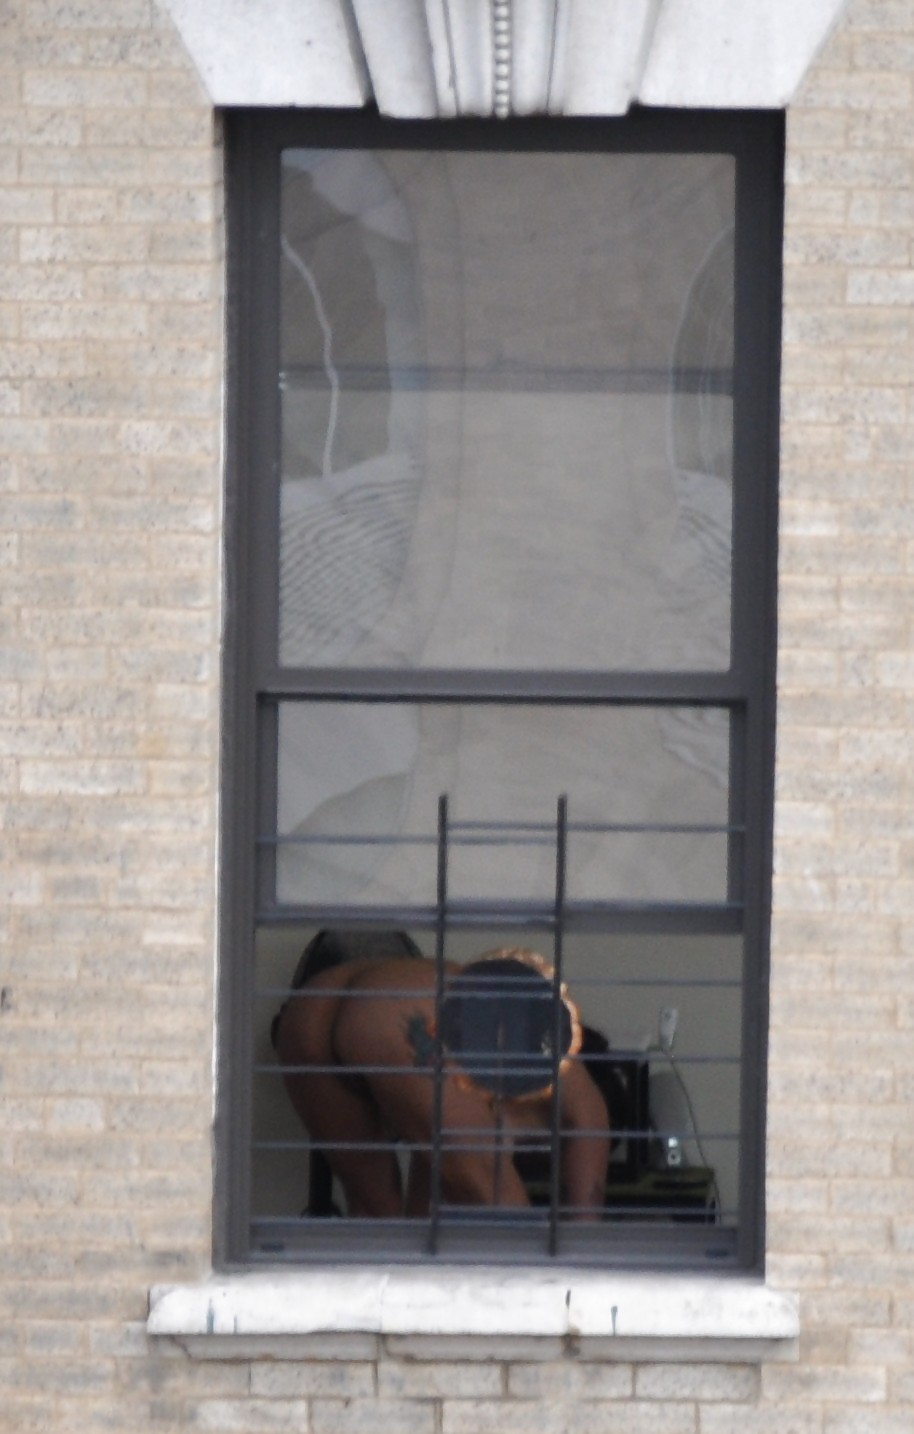 Harlem Naked Neighbor Girl Naked in the Window - New York #5378700